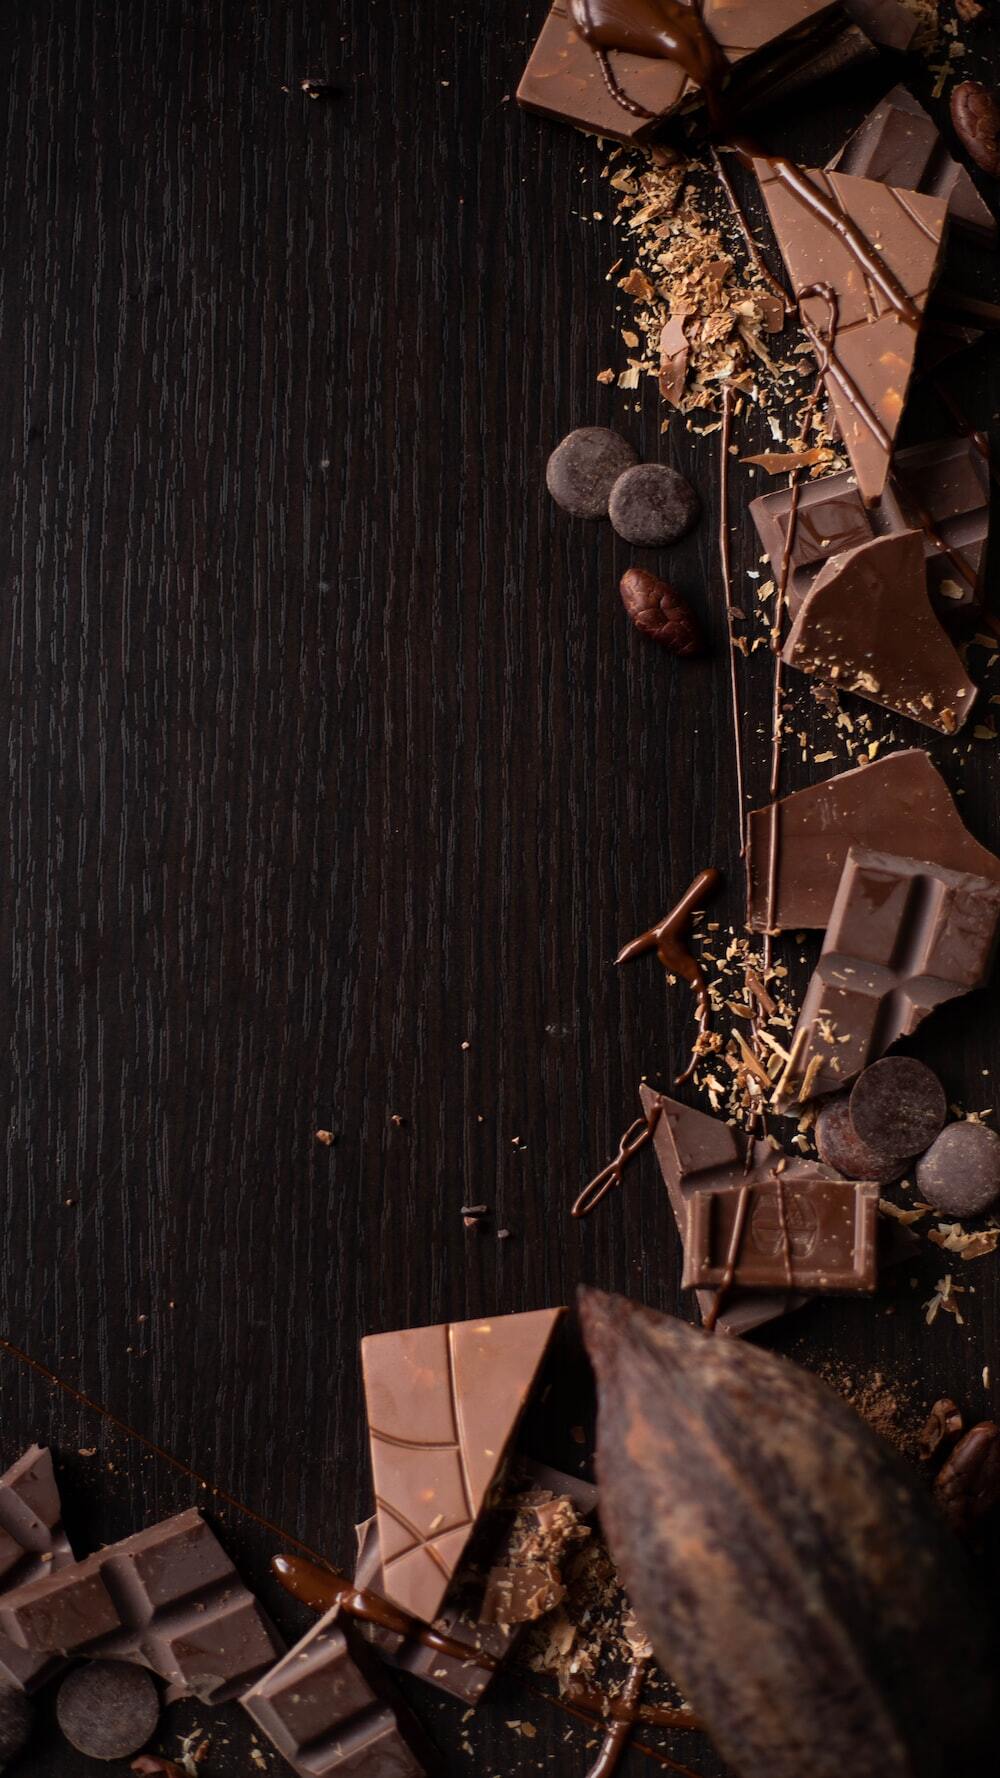 Учёные выяснили, для каких органов шоколад полезнее всего